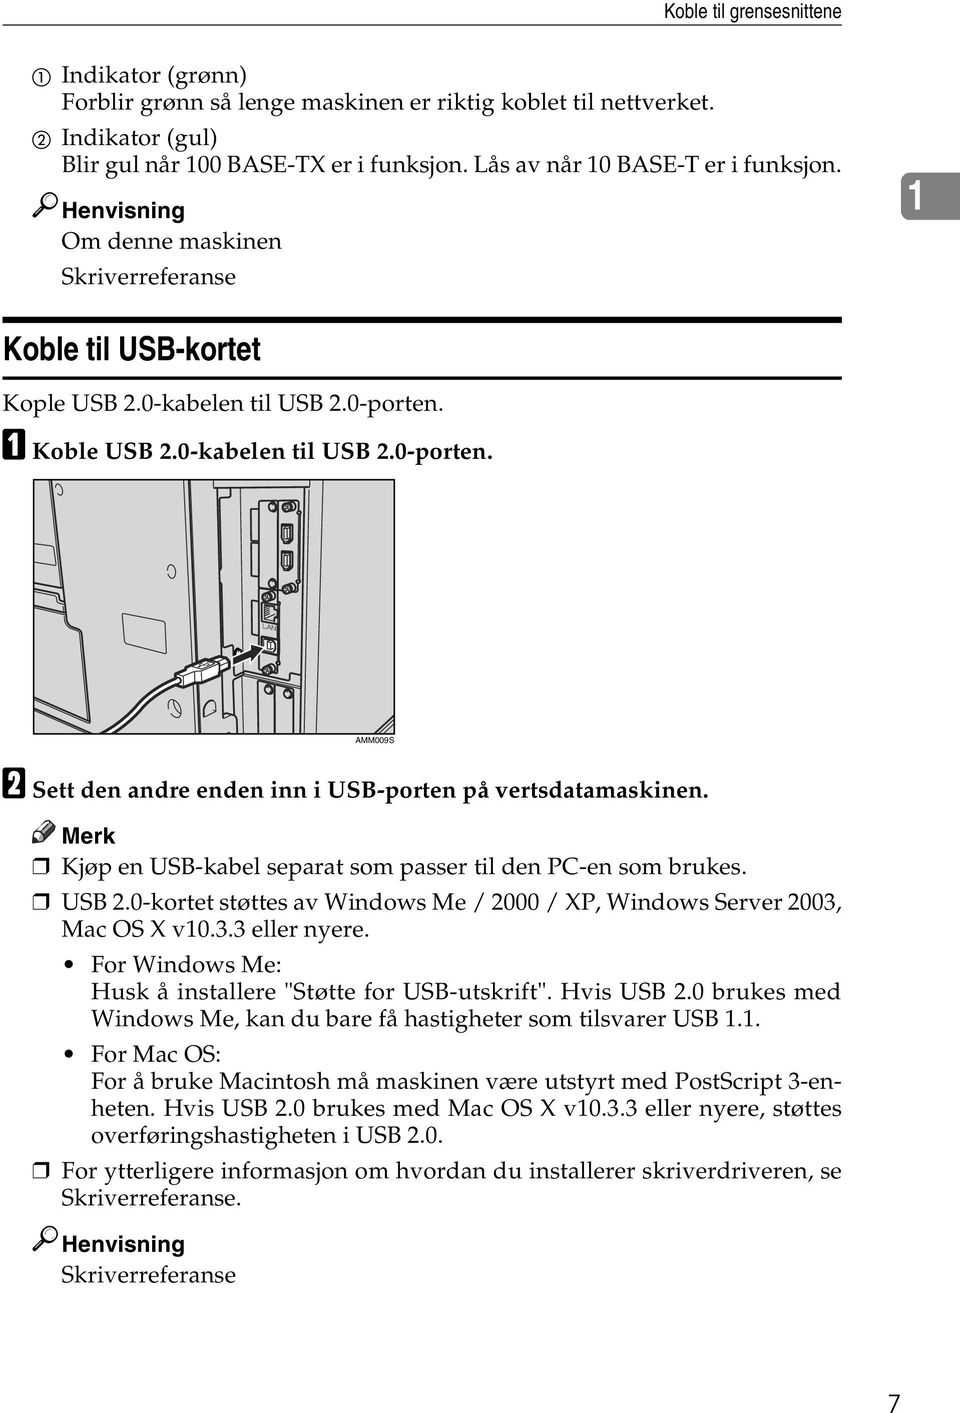 A Koble USB 2.0-kabelen til USB 2.0-porten. AMM009S B Sett den andre enden inn i USB-porten på vertsdatamaskinen. Merk Kjøp en USB-kabel separat som passer til den PC-en som brukes. USB 2.0-kortet støttes av Windows Me / 2000 / XP, Windows Server 2003, Mac OS X v10.